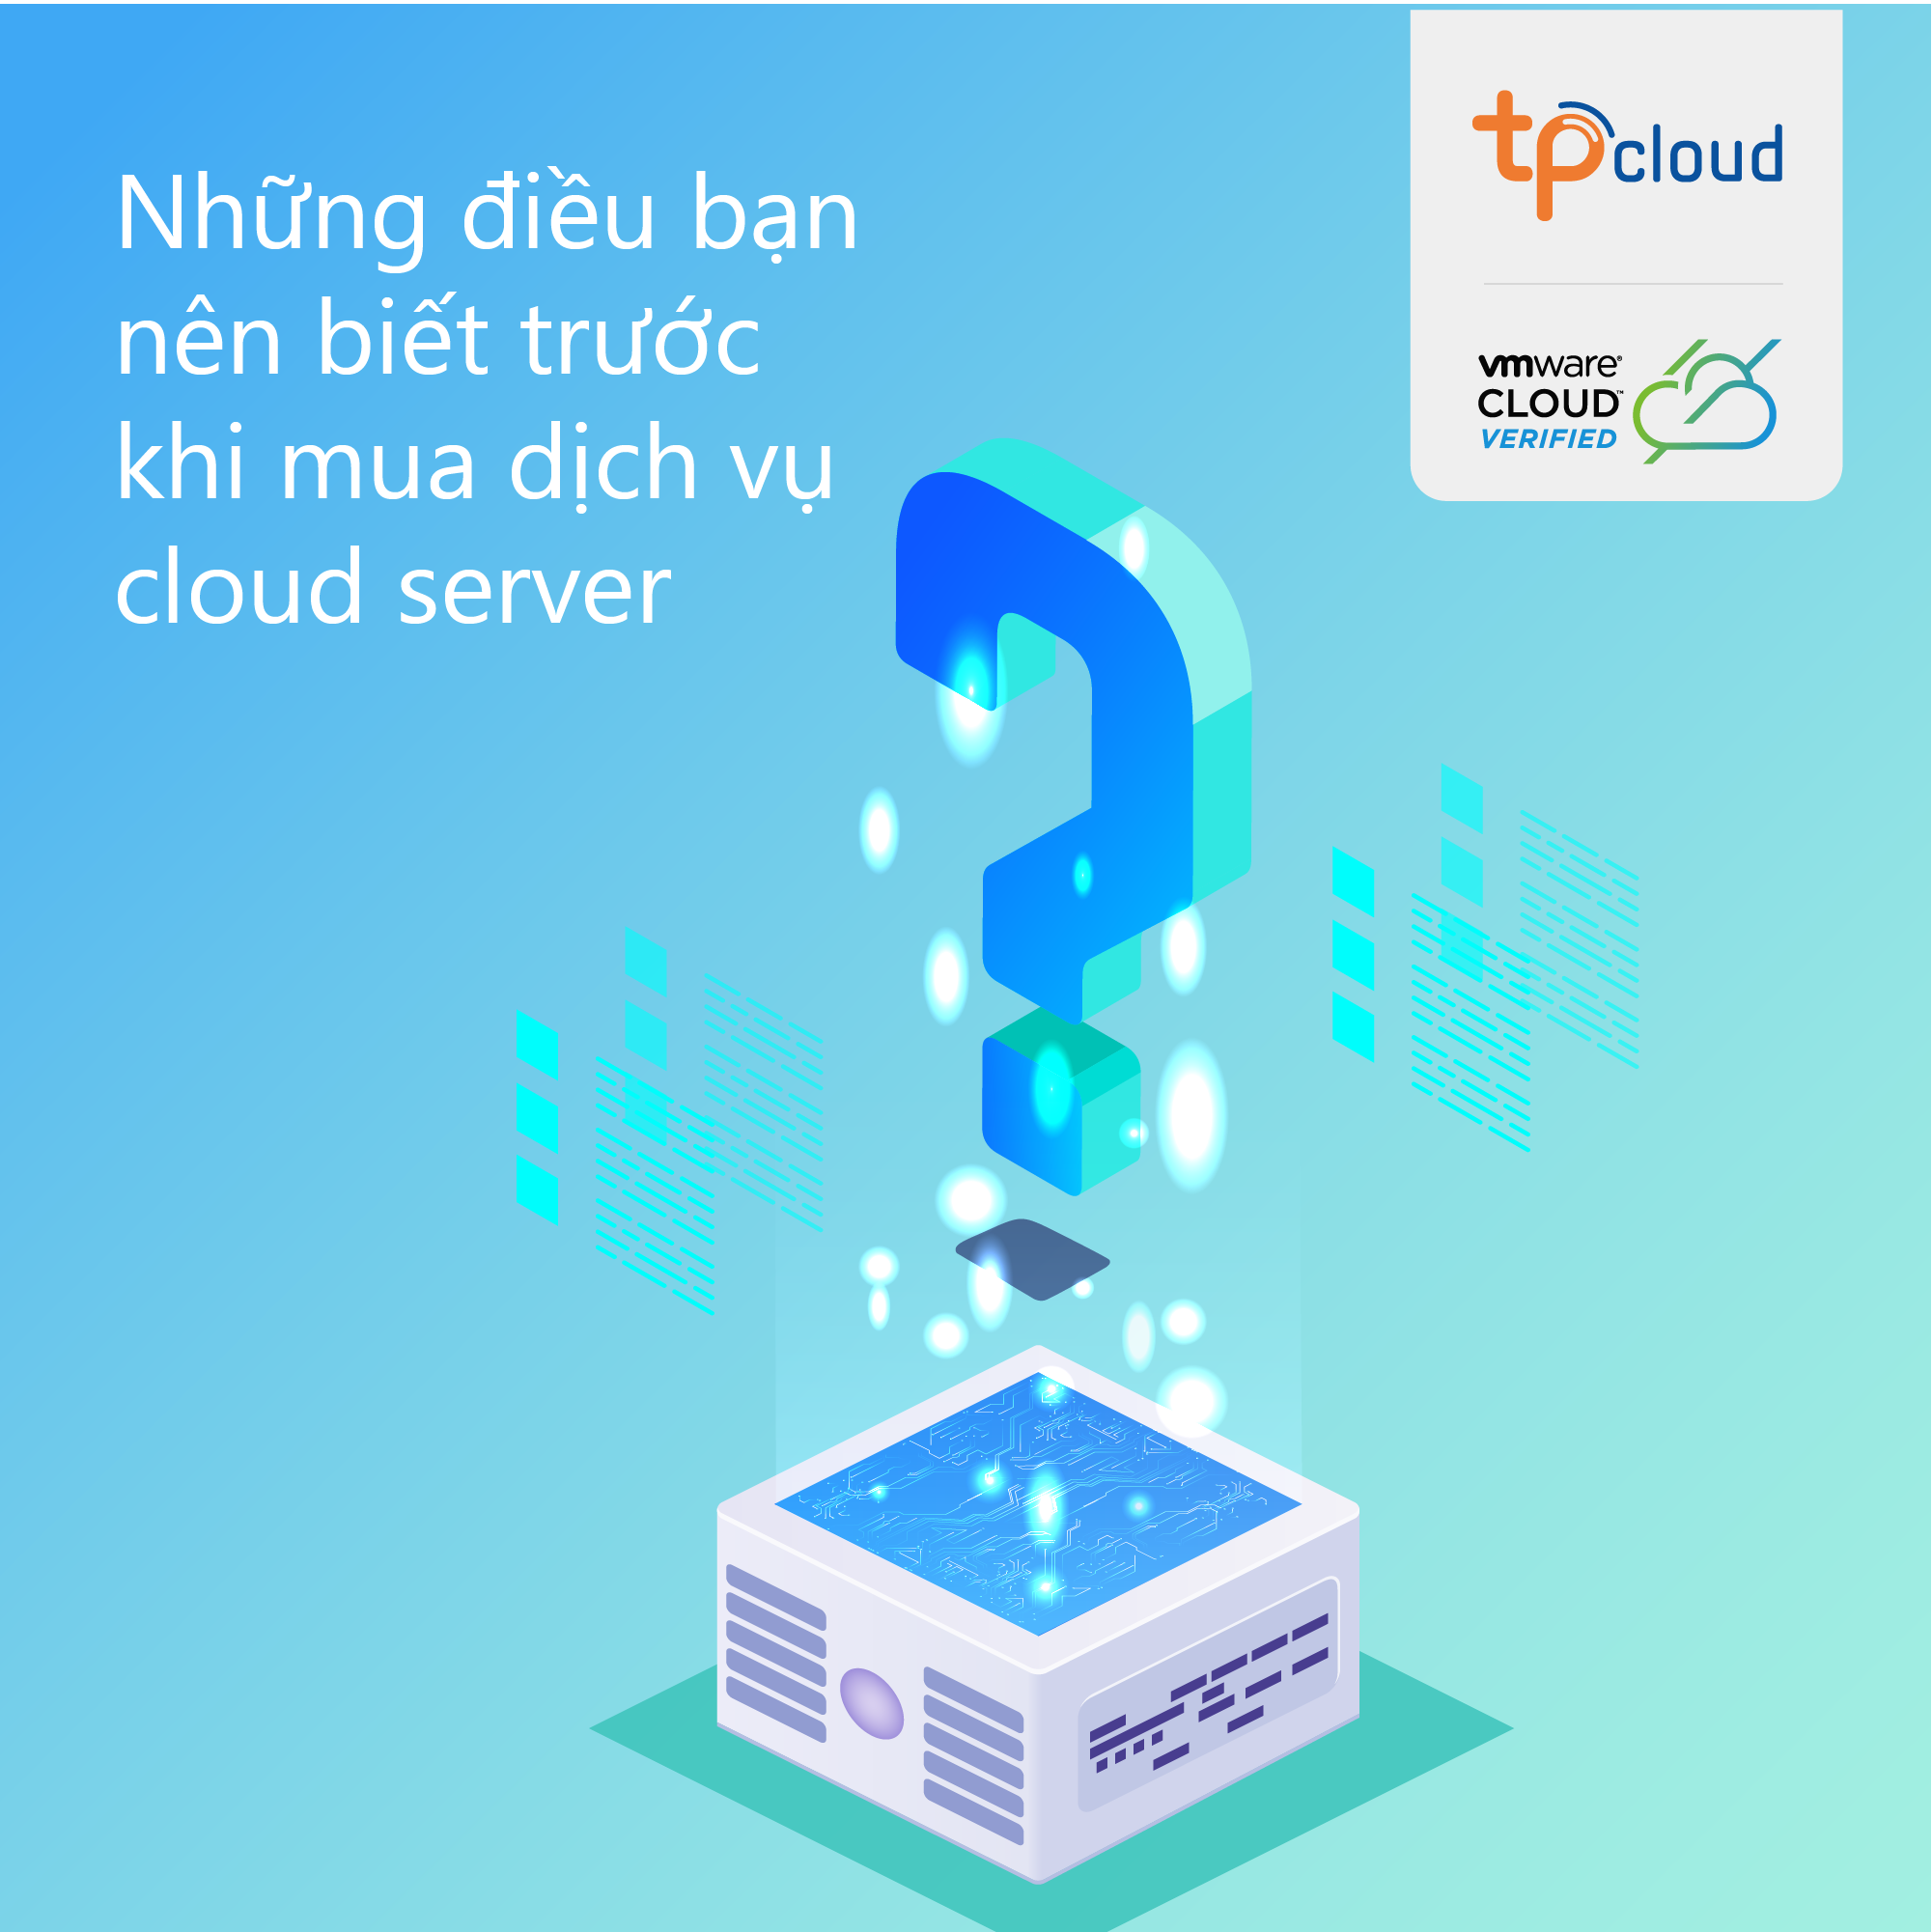 nhung-dieu-ban-nen-biet-khi-chon-dich-vu-cloud-server